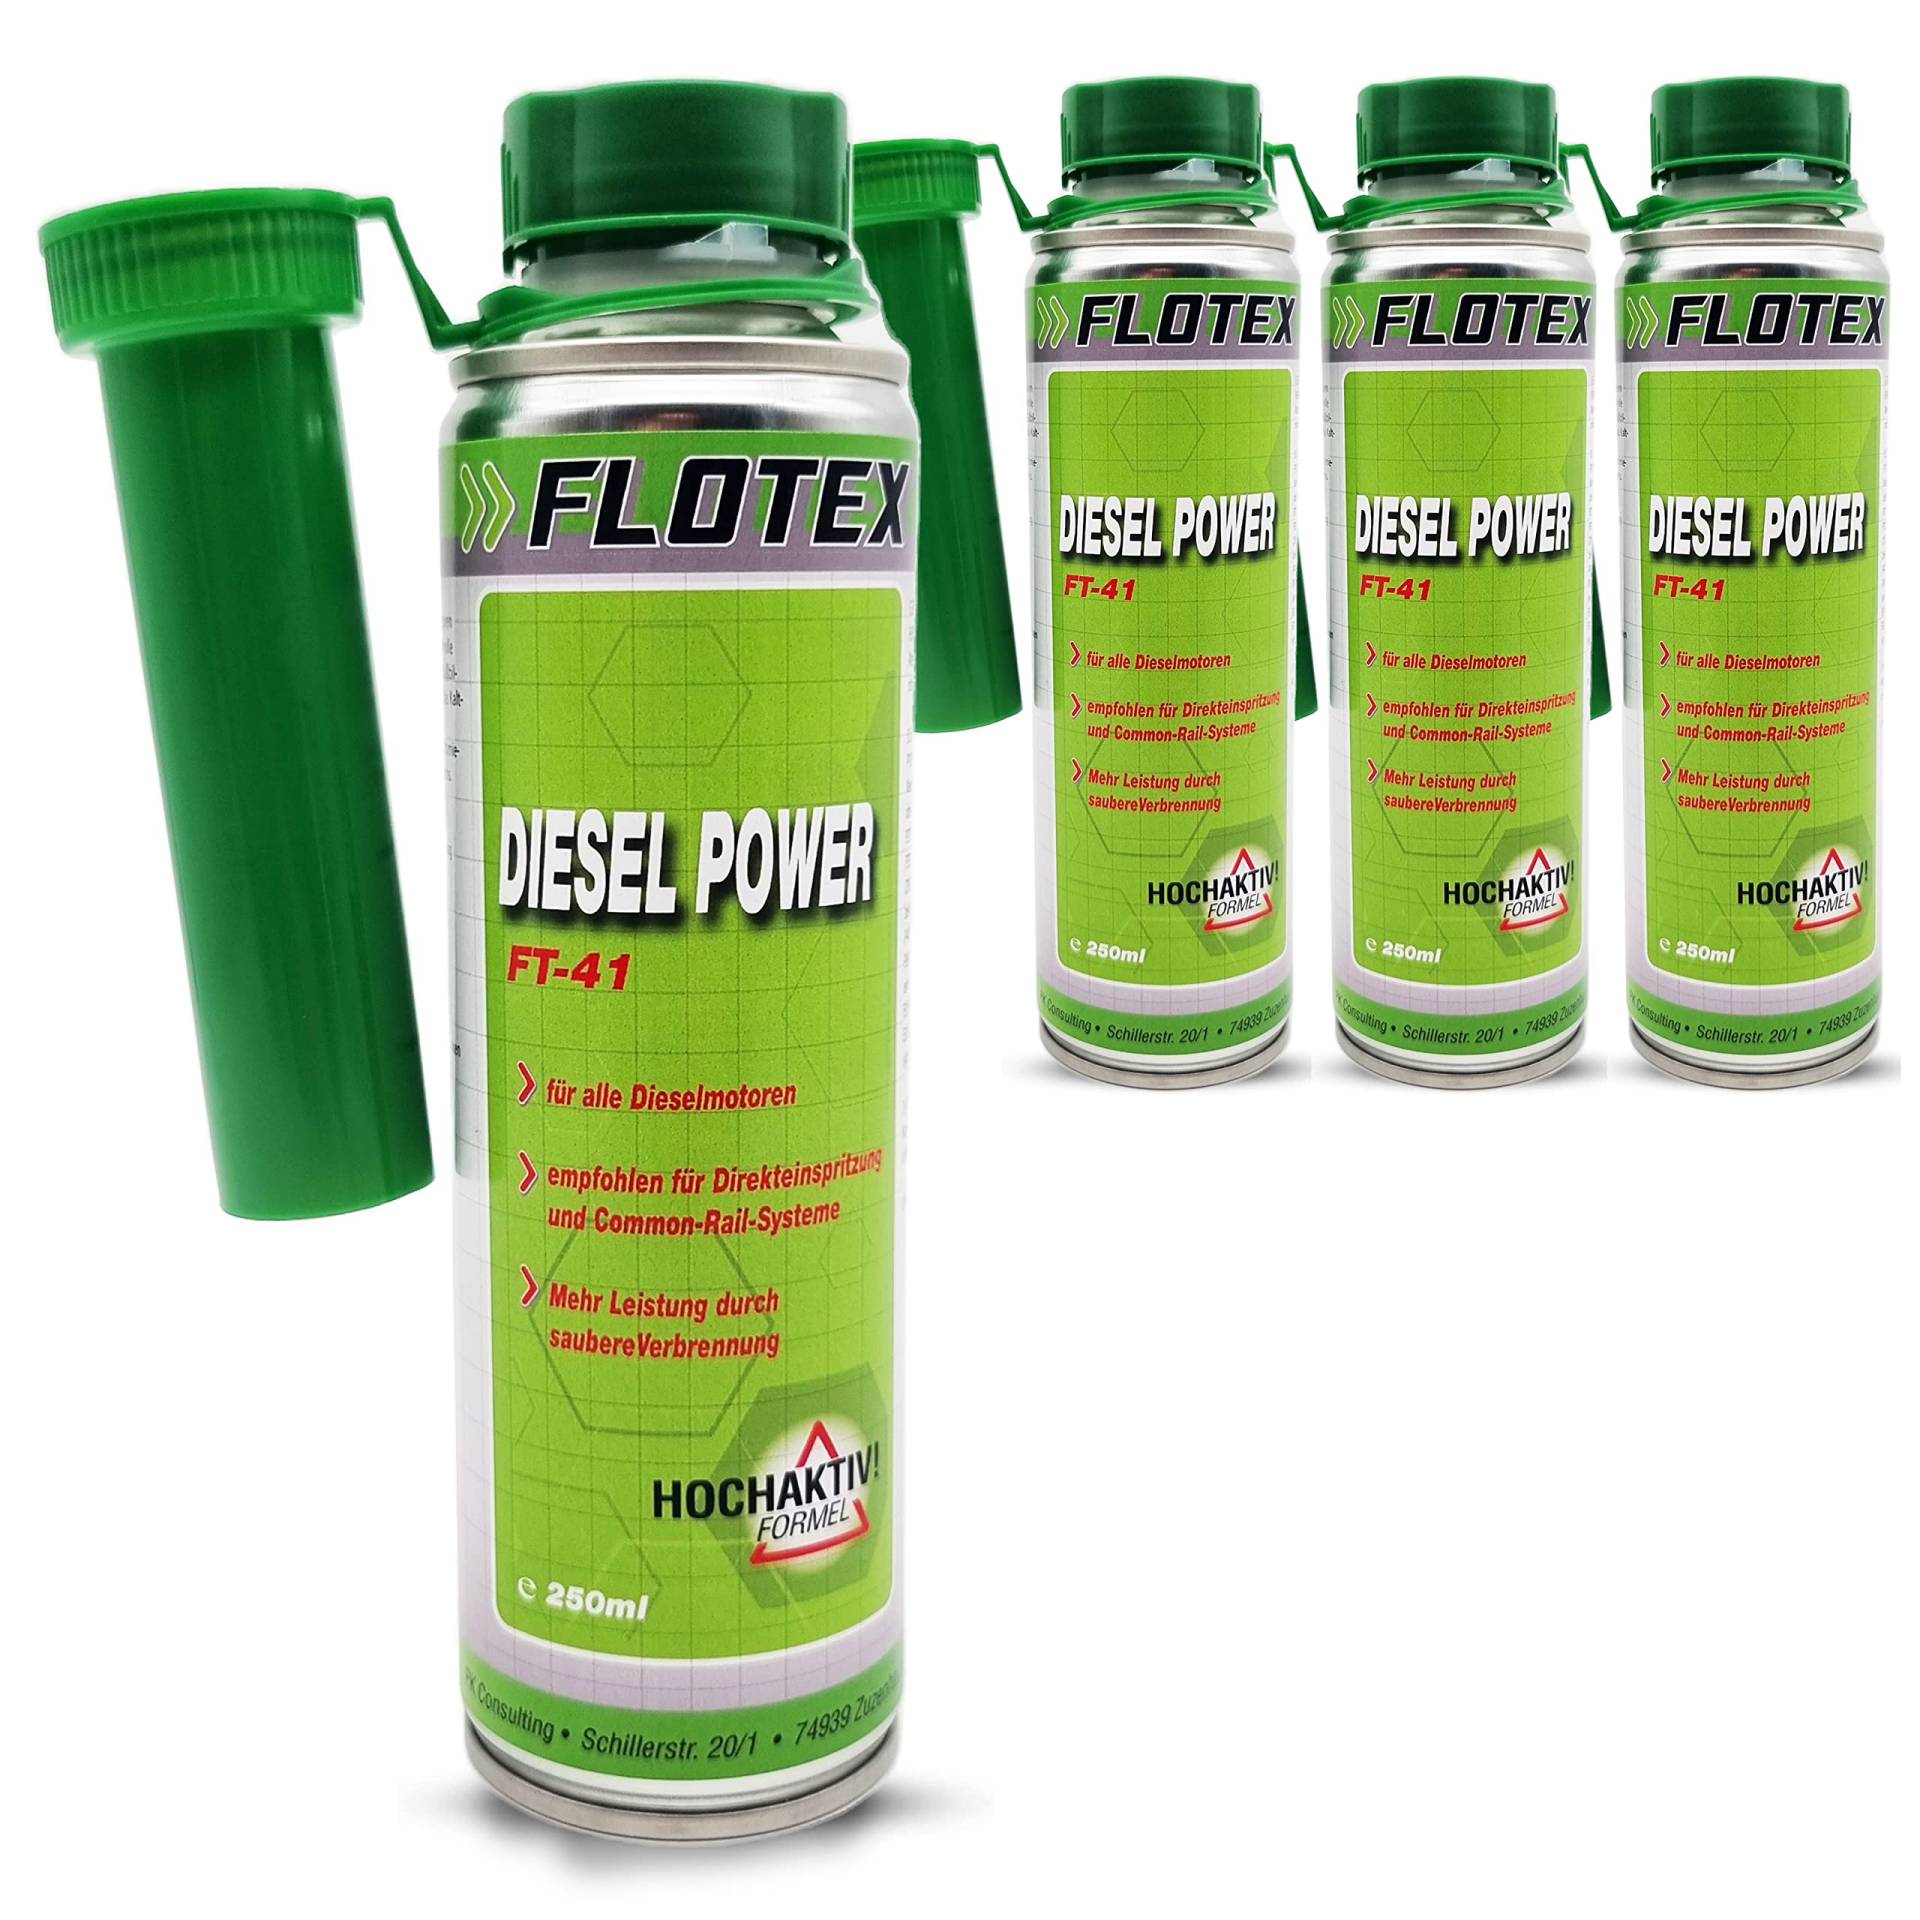 Flotex Diesel Power, 4 x 250ml Additiv Kraftstoffsystemzusatz für alle Dieselmotoren von Flotex